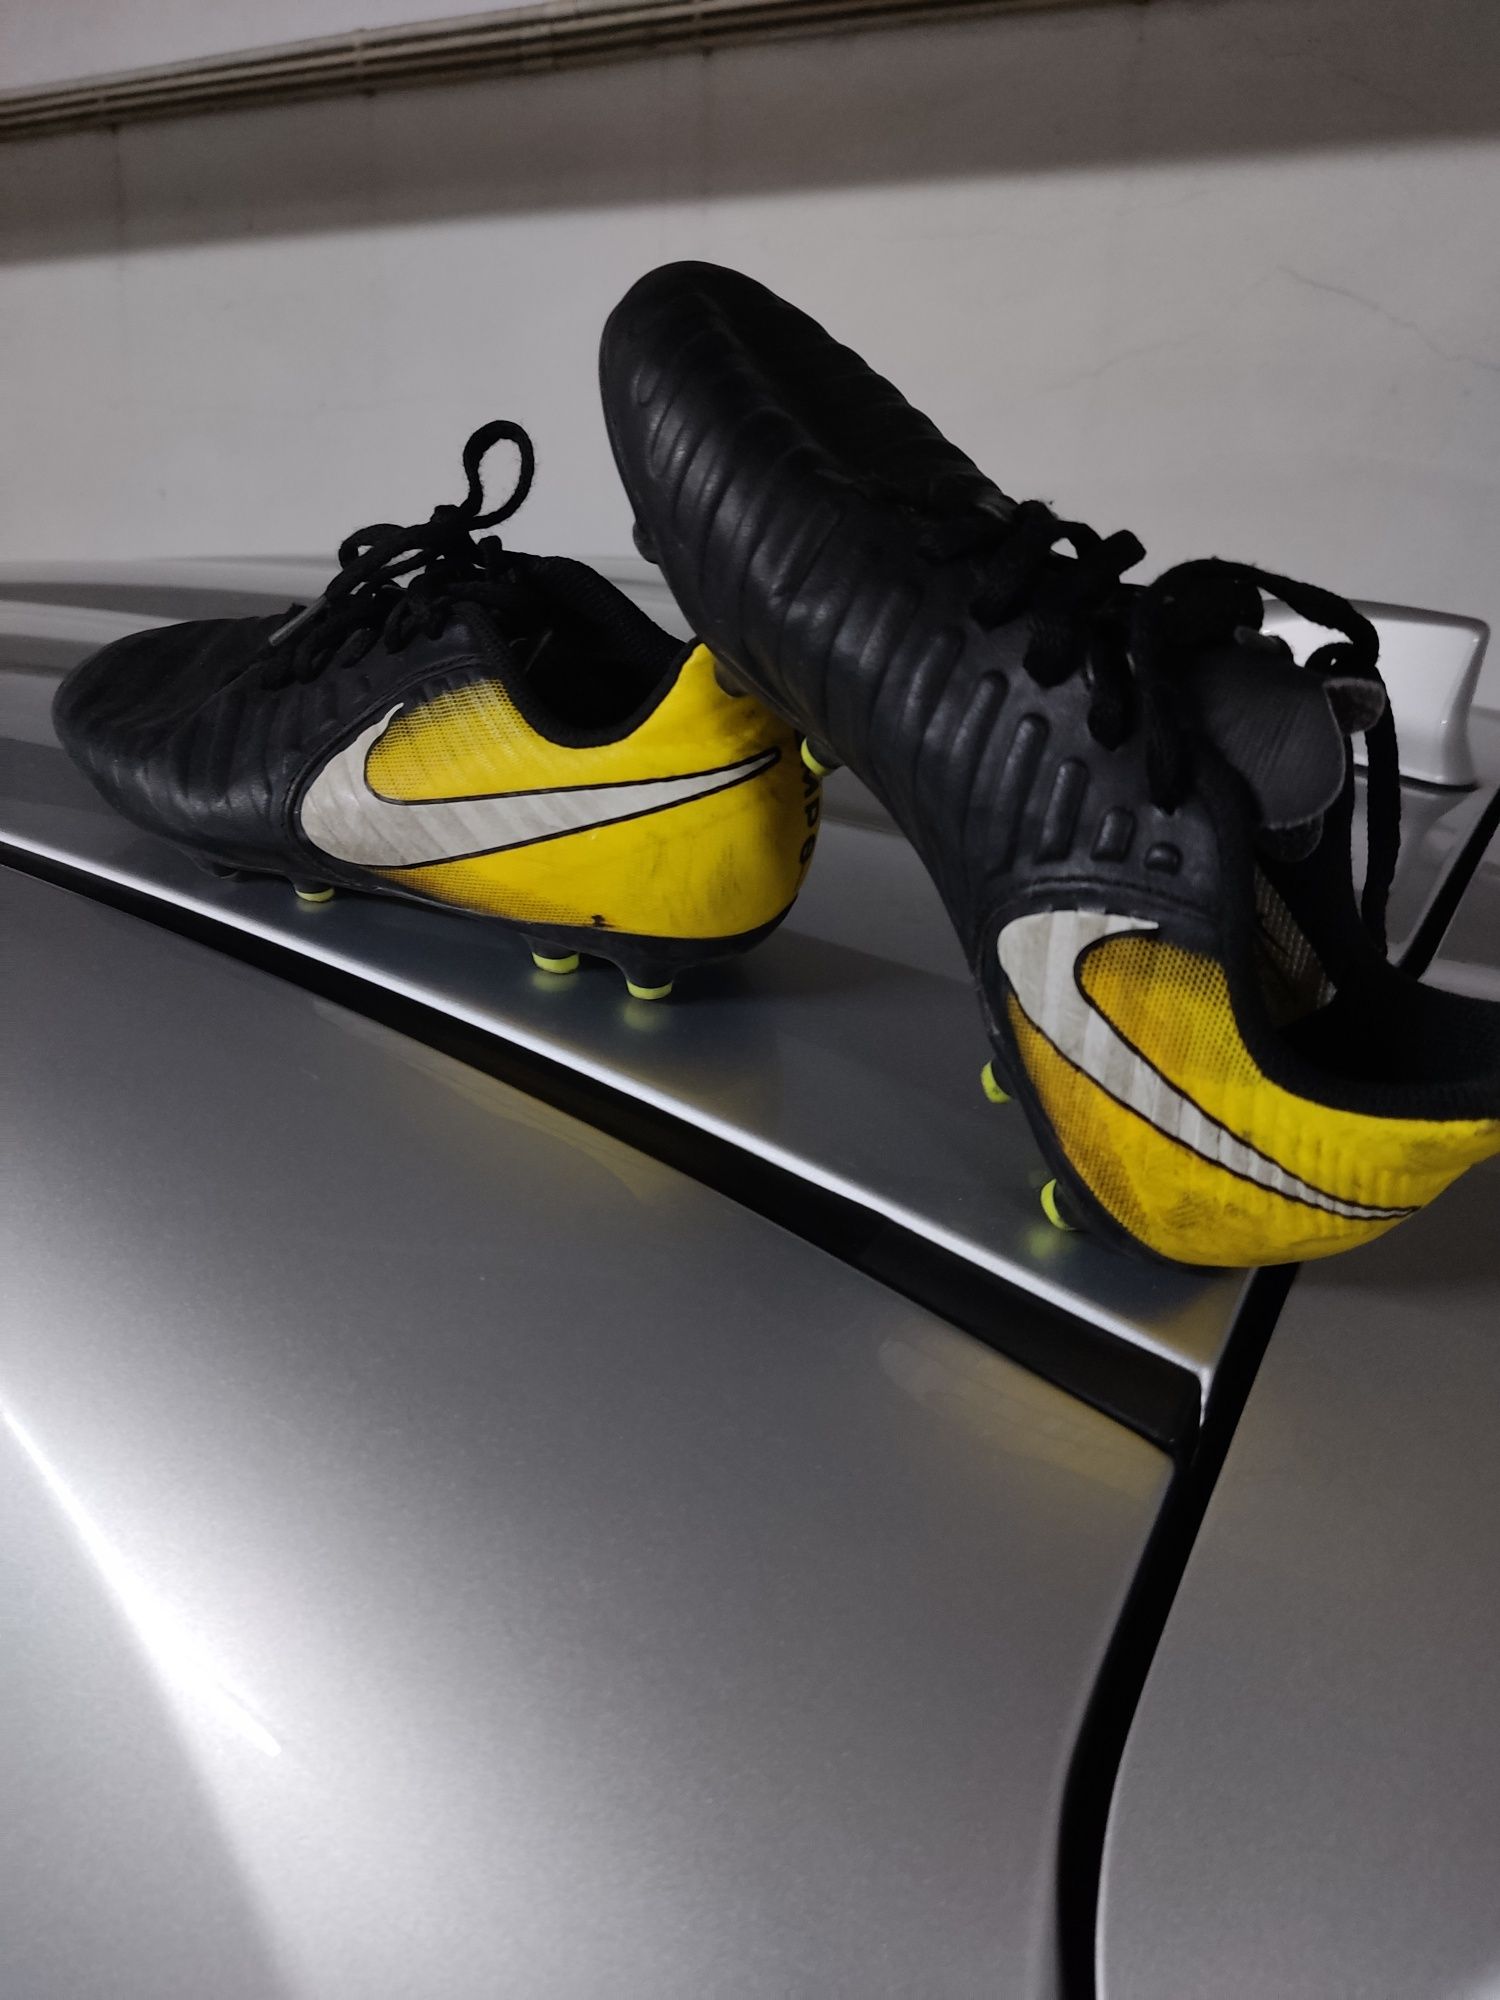 Botas de futebol  Adidas e Nike